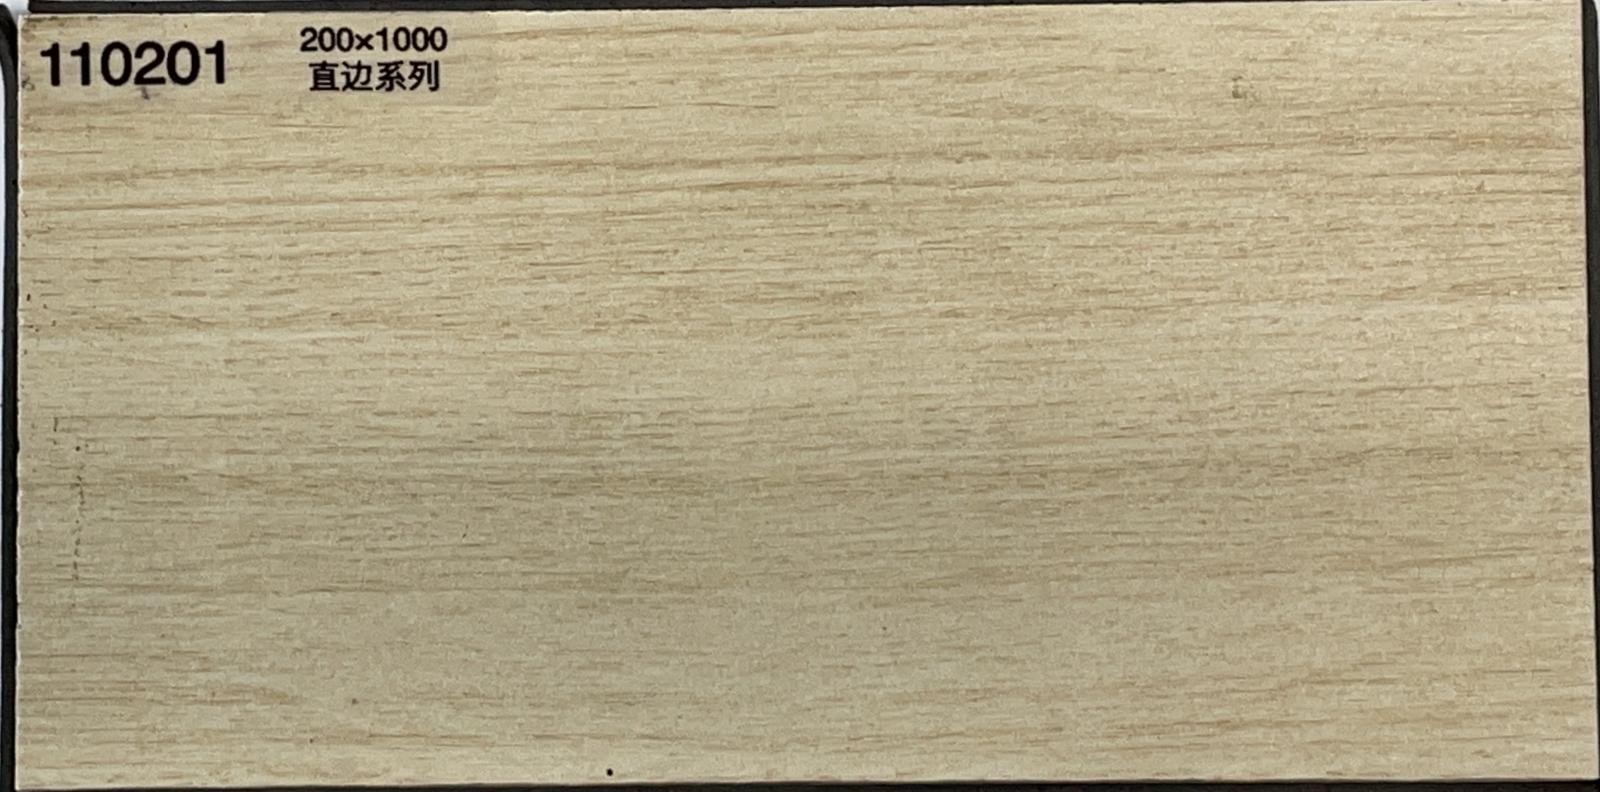 木紋磚 KBC 系列 110201